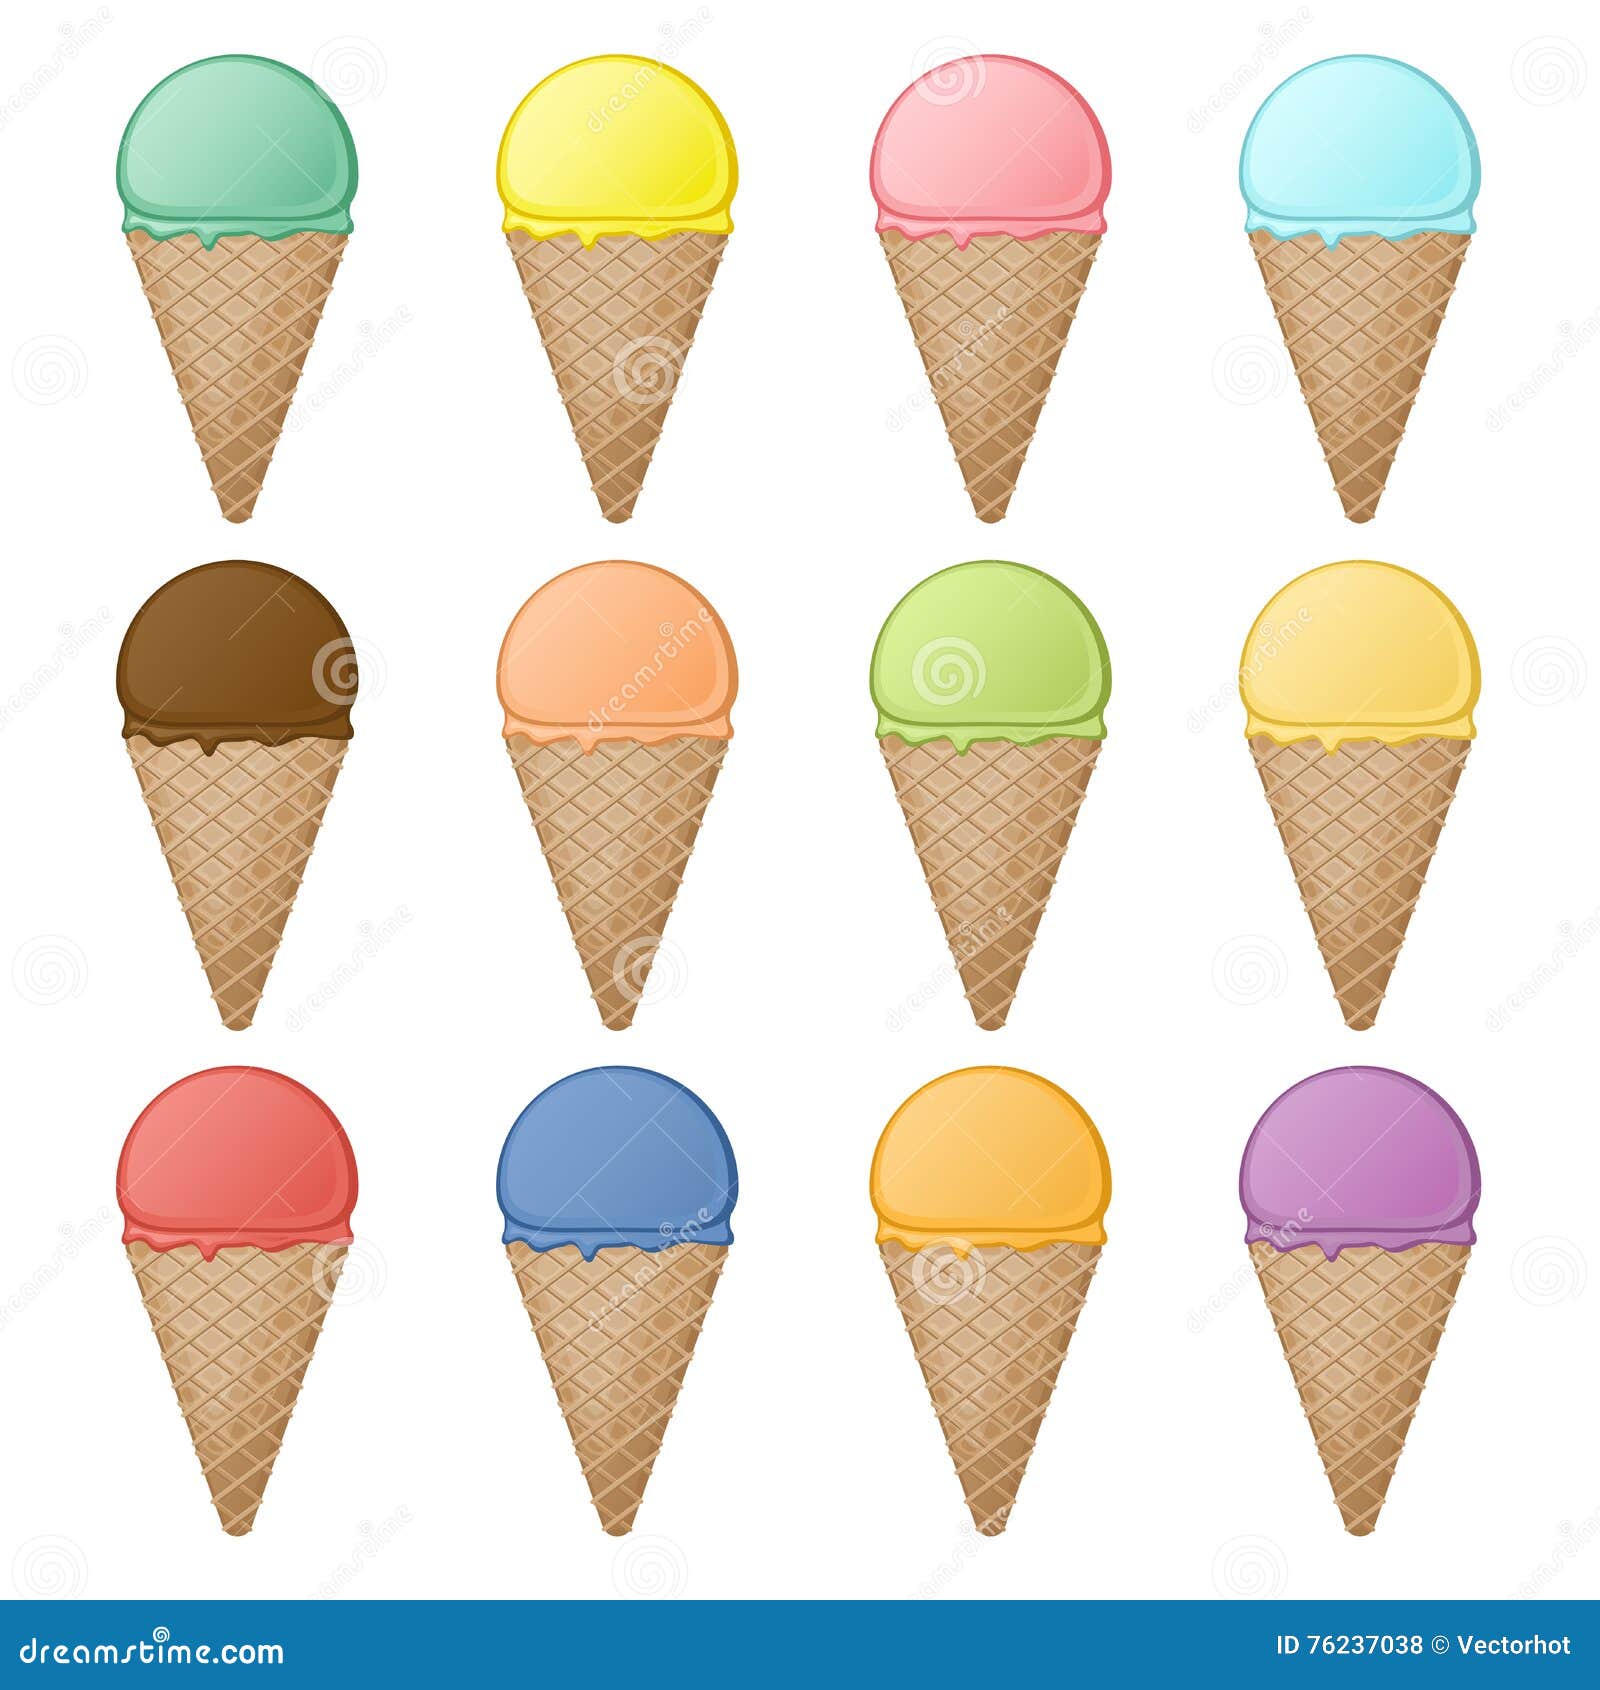 Jogo, icecream, diferente, sabores, ilustração